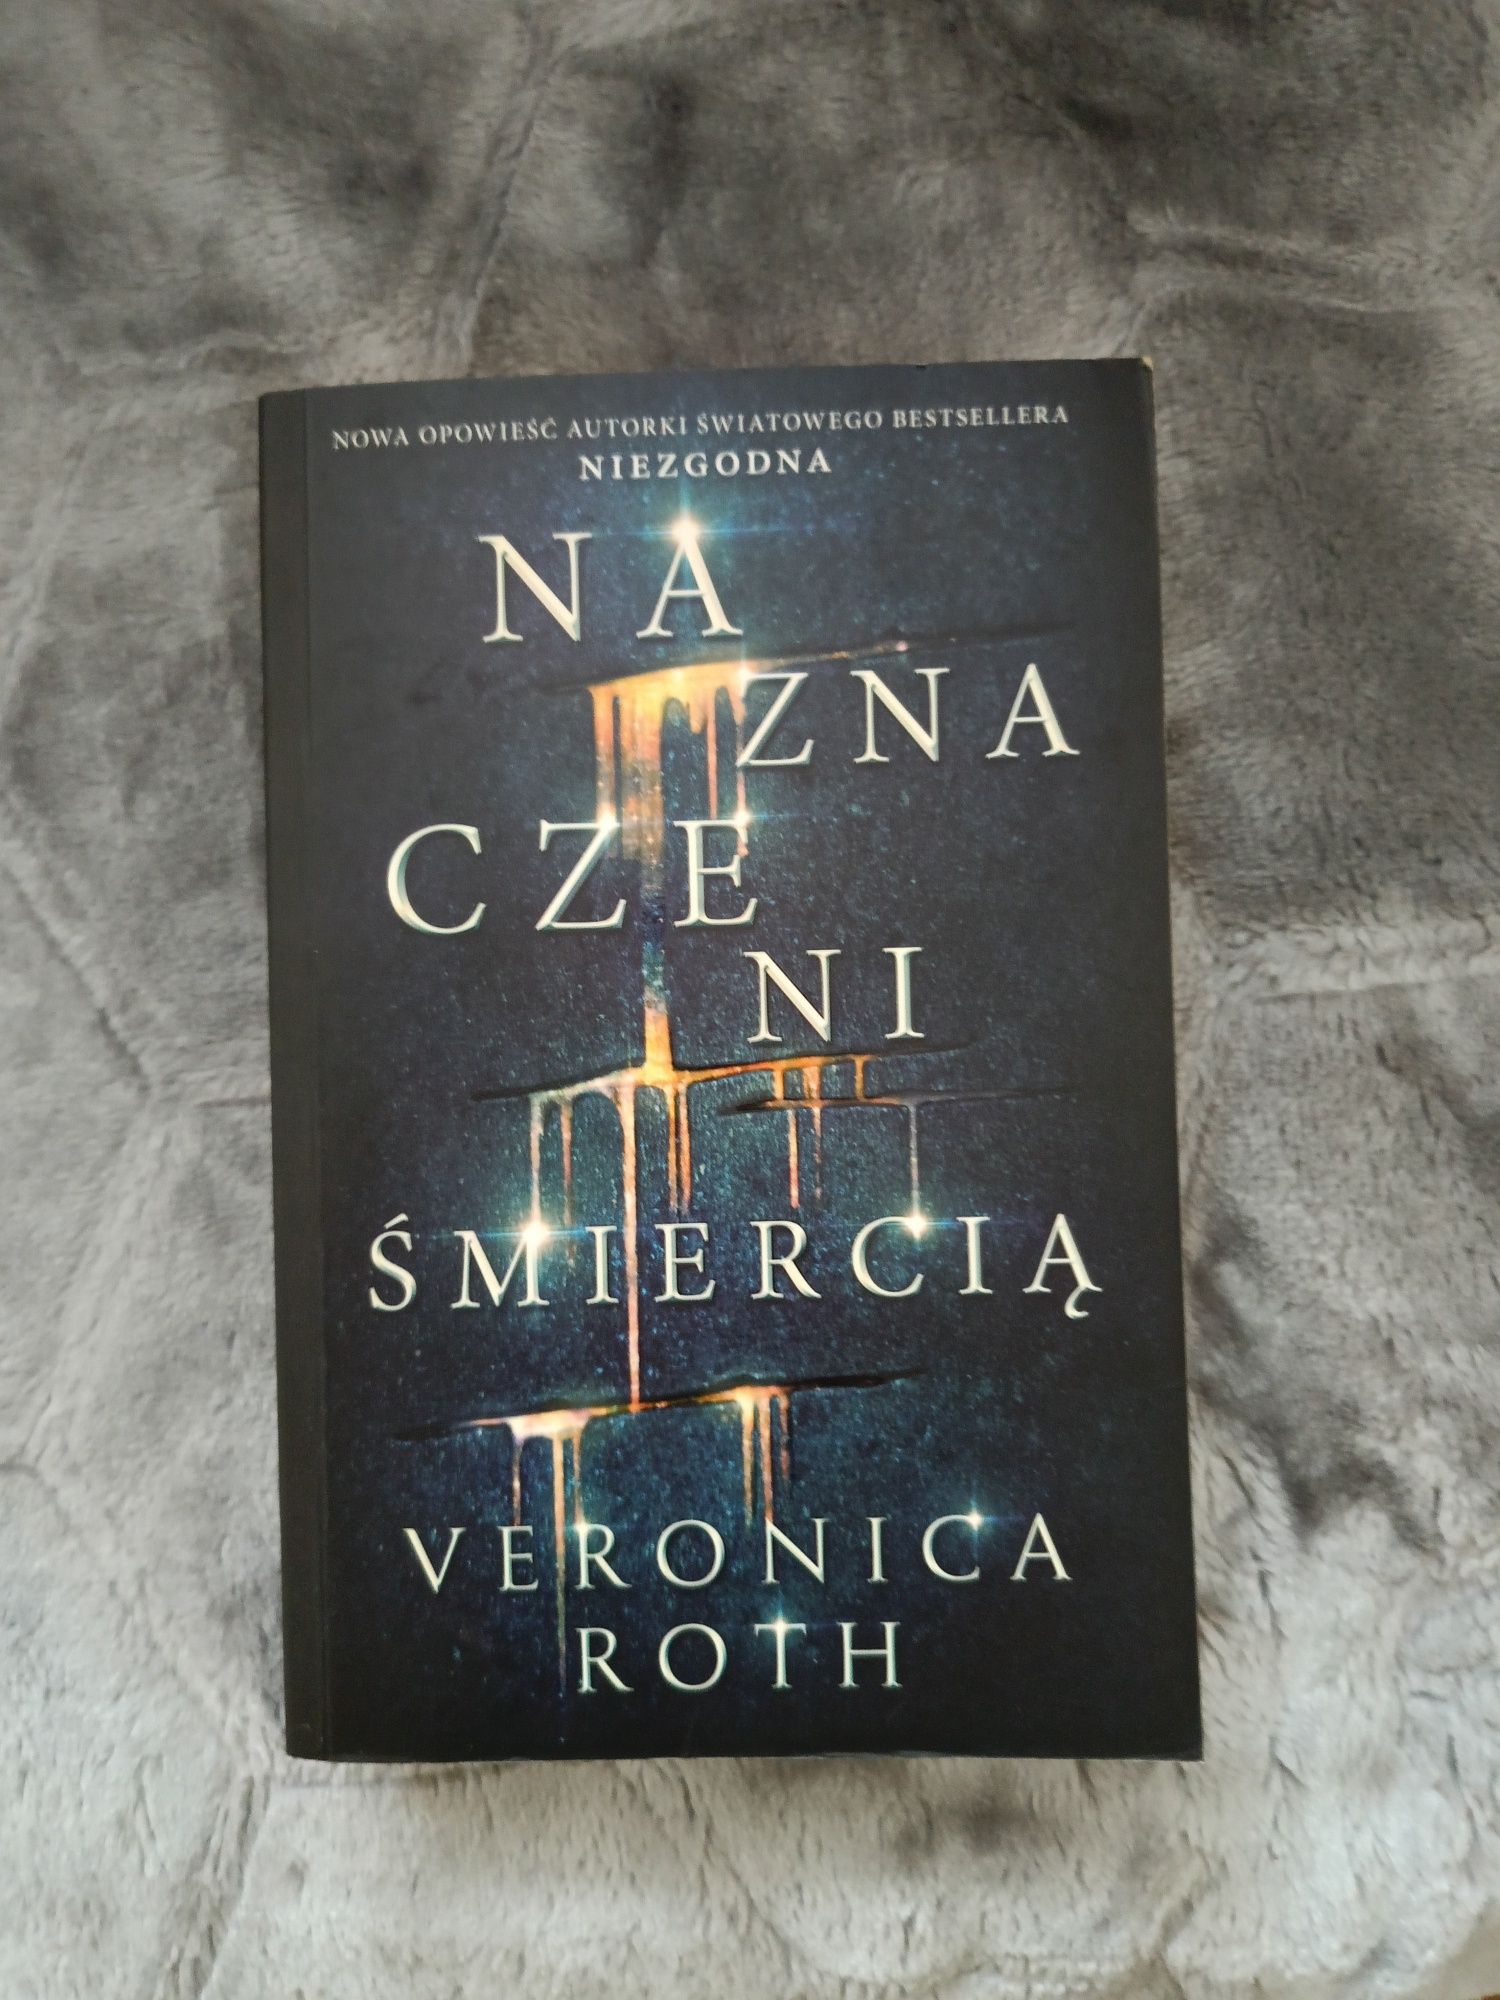 Veronika Roth "Naznaczeni Śmiercią"